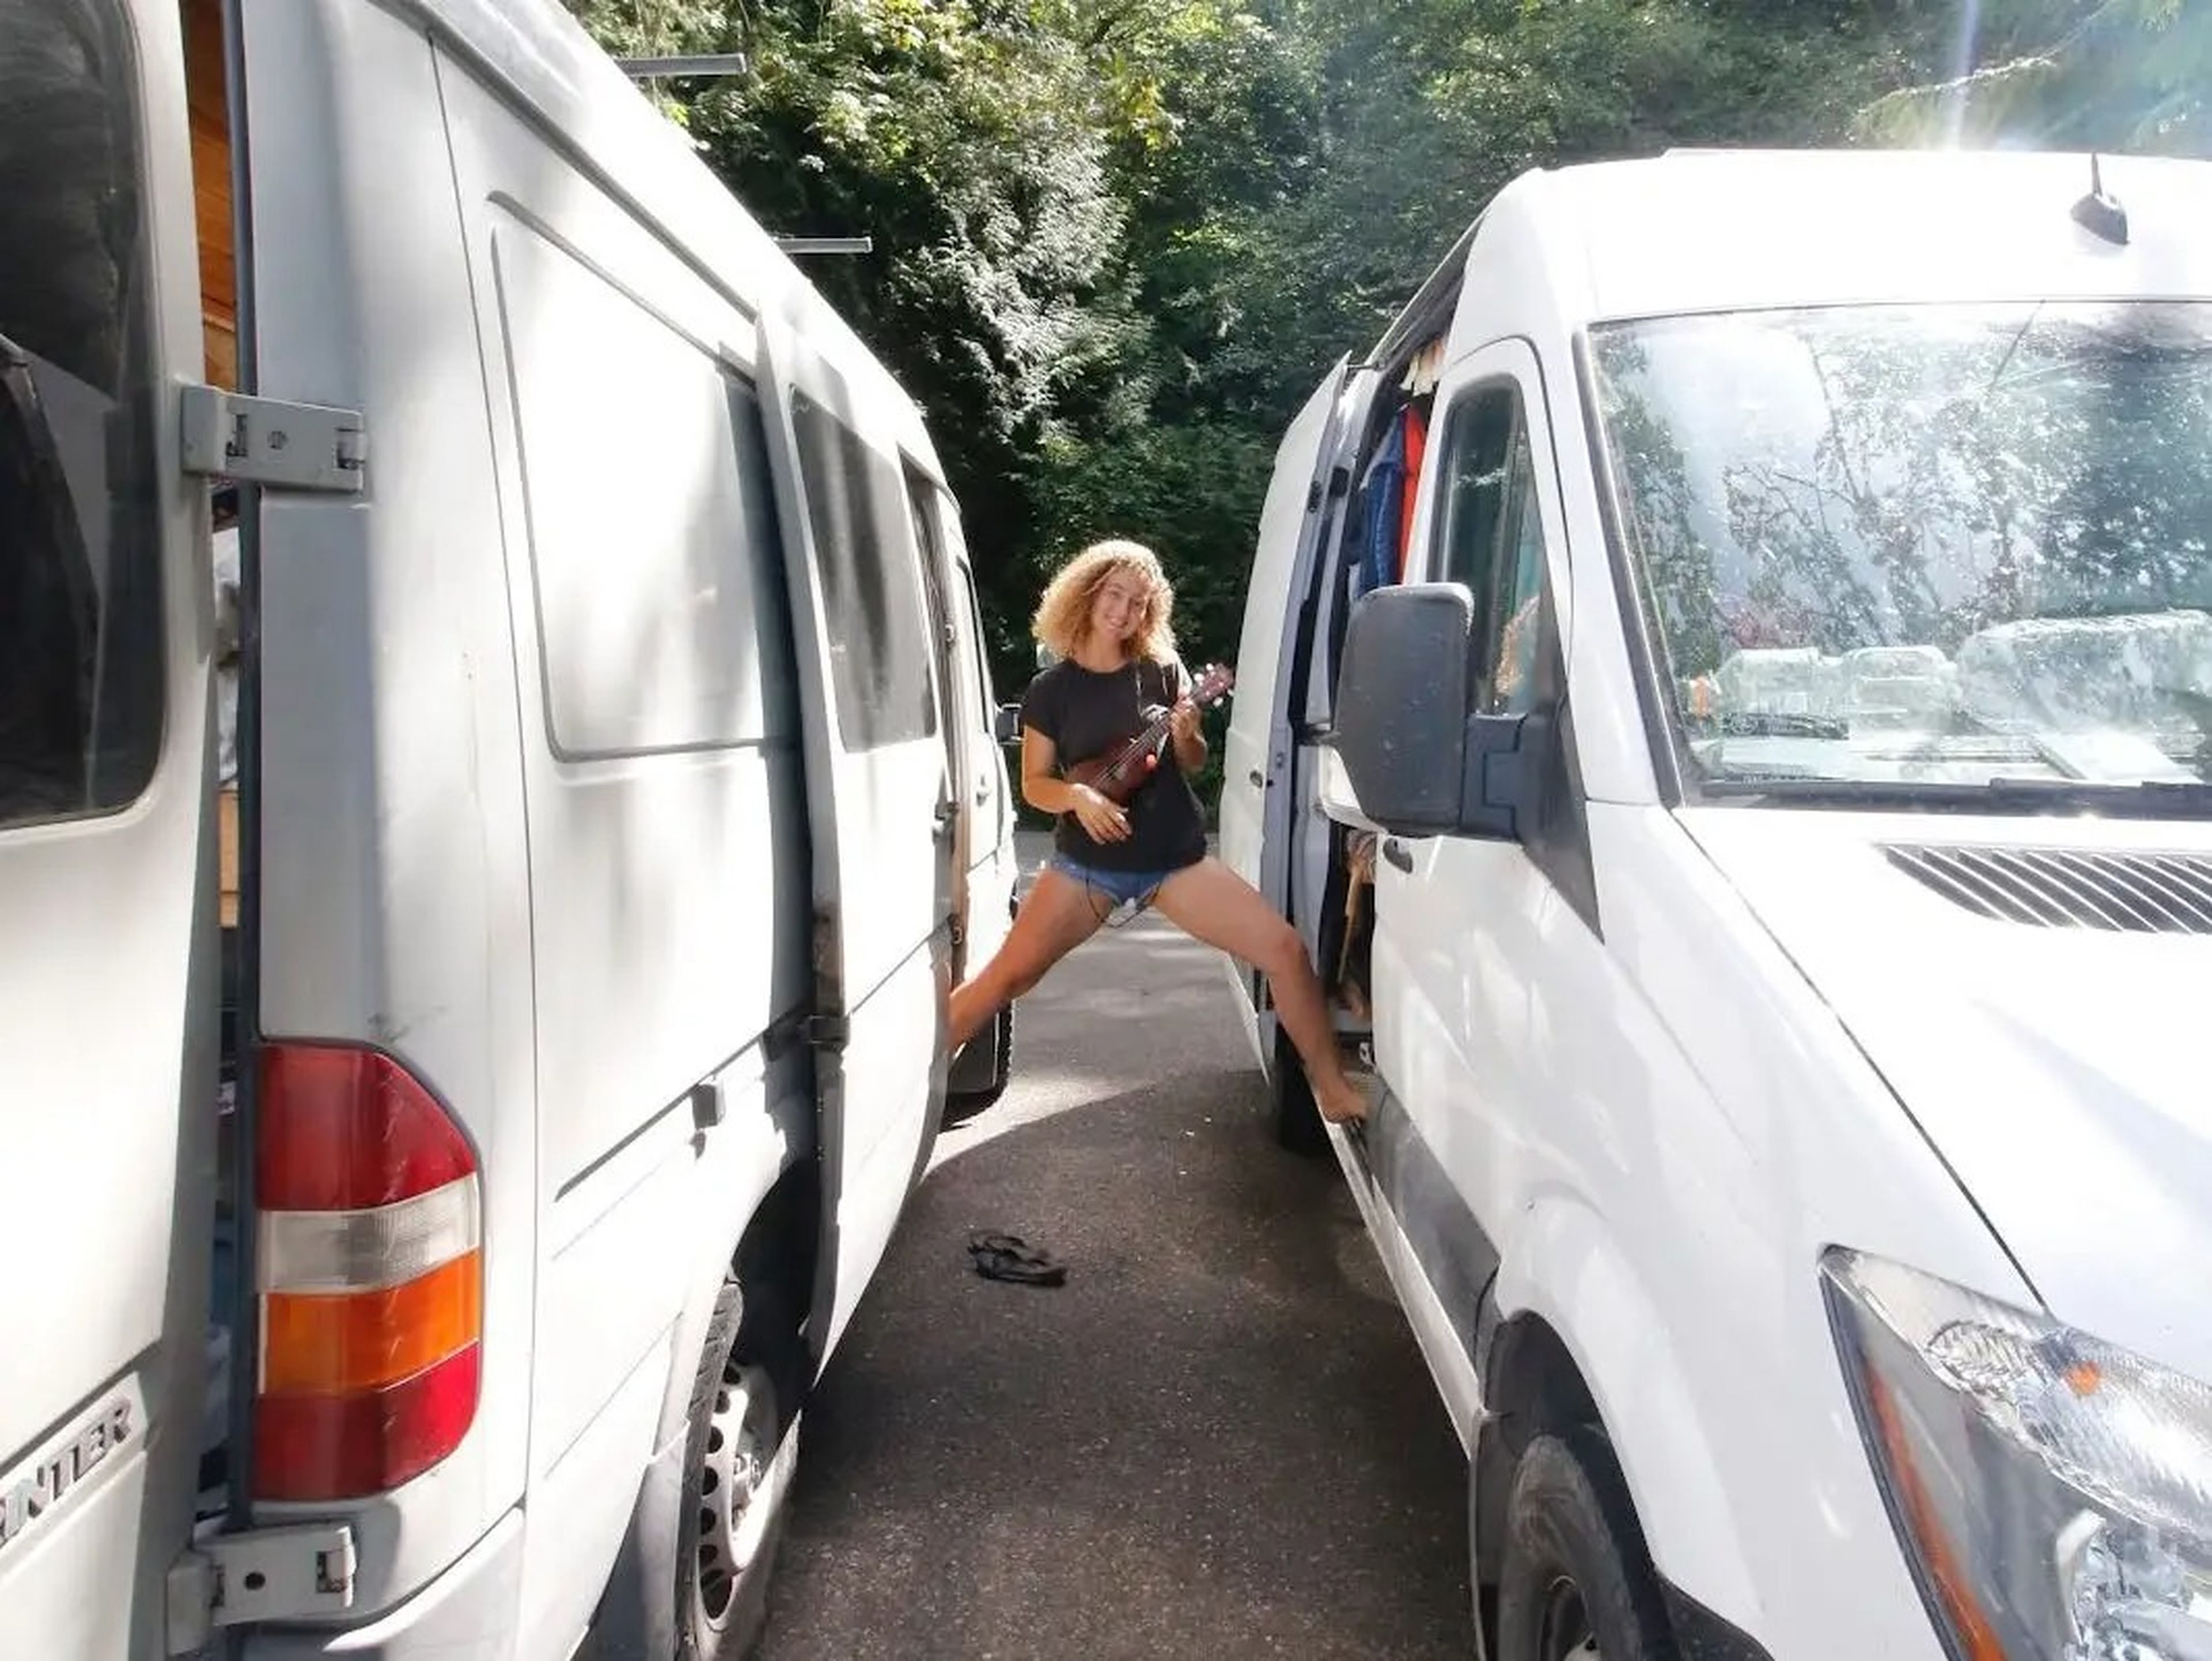 kaya lindsay standing between two vans